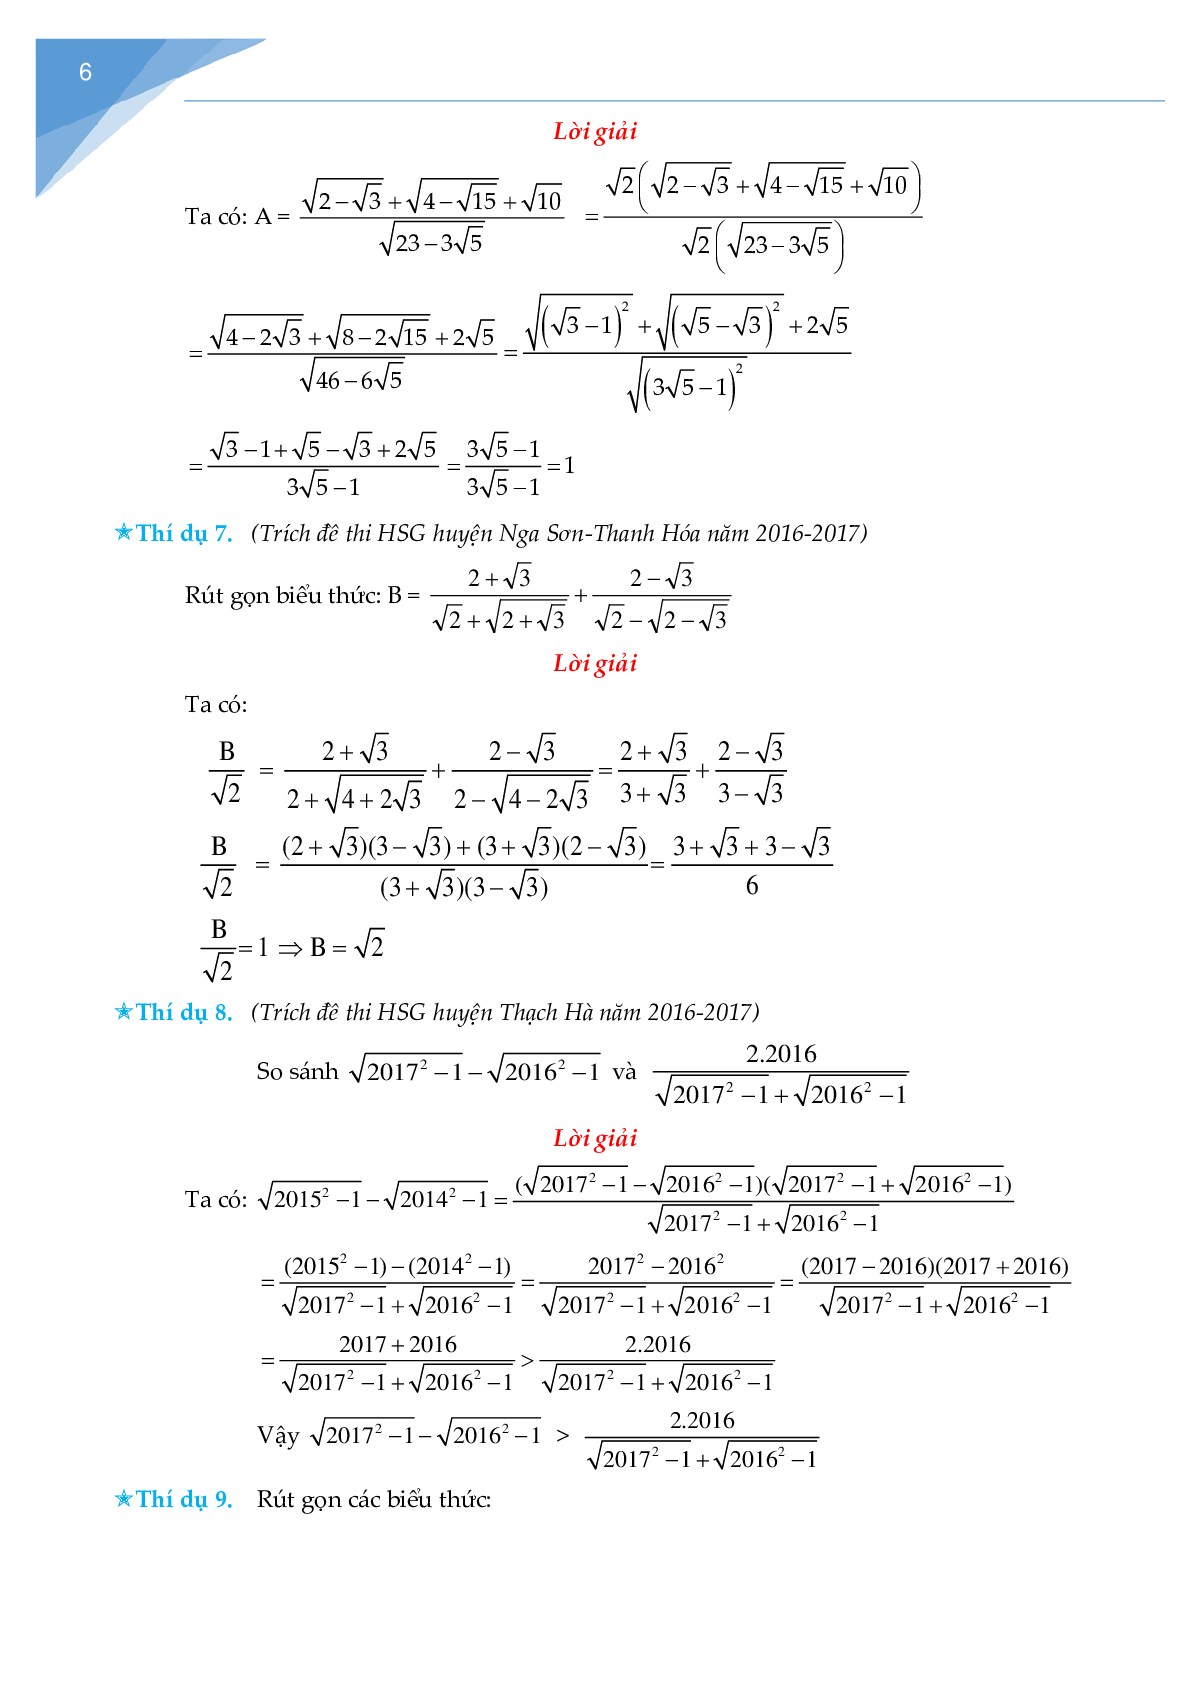 Rút gọn biểu thức chứa căn và bài toán liên quan (trang 6)